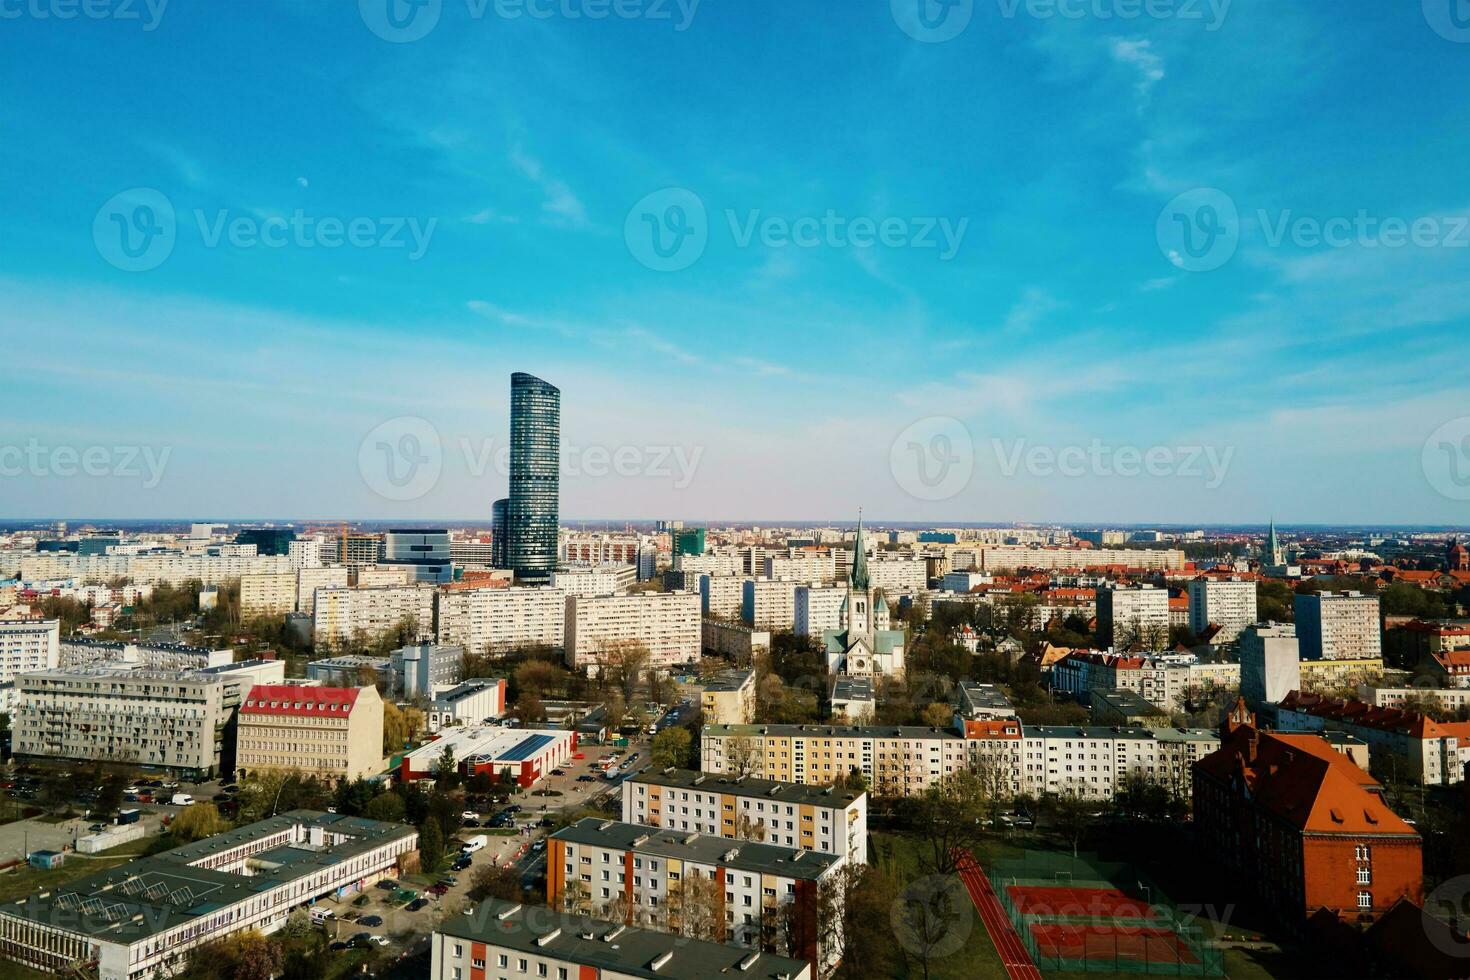 Breslau Panorama, Antenne Sicht. Stadtbild von modern europäisch Stadt foto